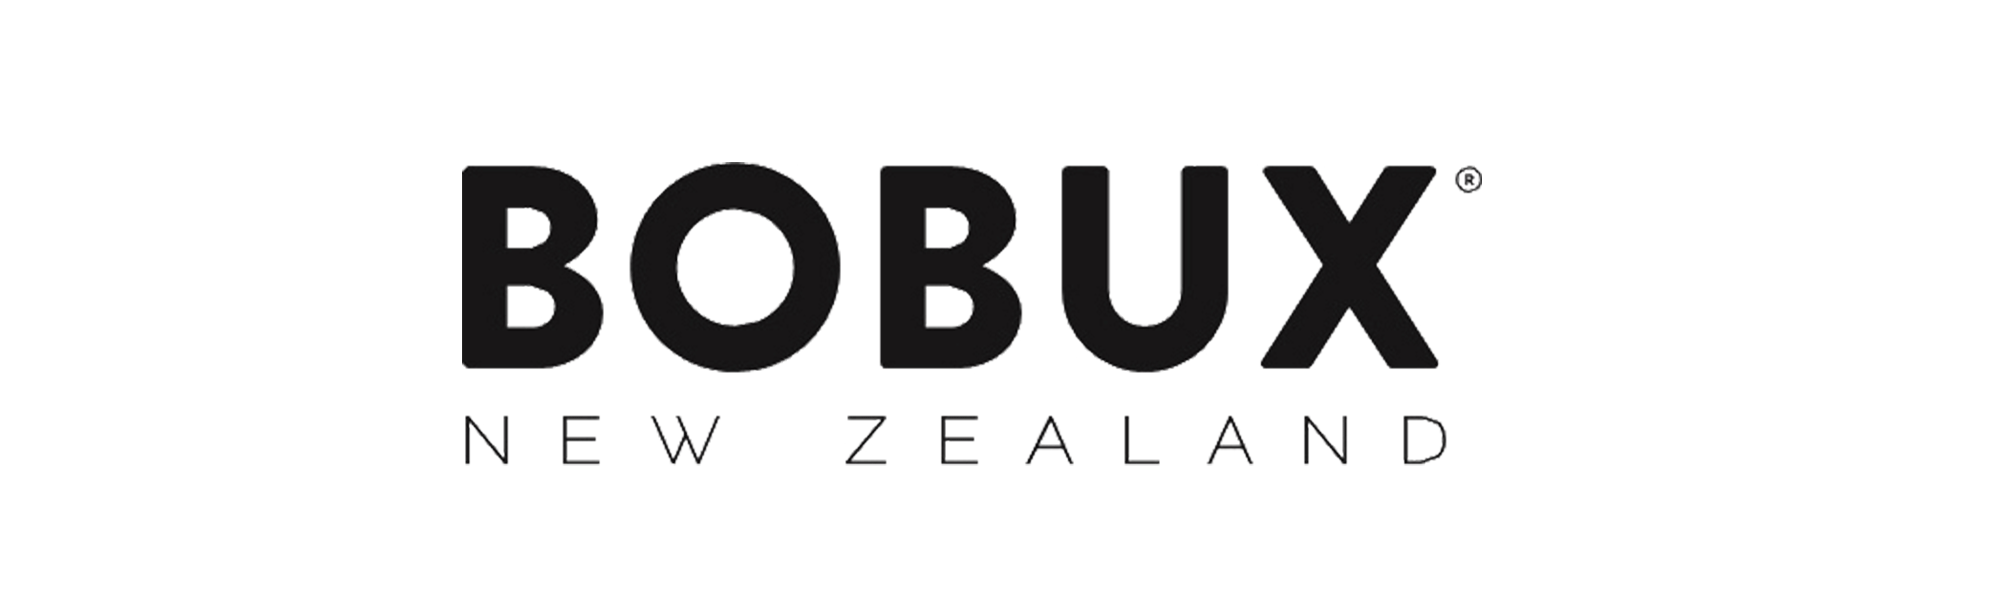 BOBUX Krabbel Schuhe in Ihrem persönlichen und traditionellen Familienunternehmen ▷ seit über 150 Jahren in der Schweiz. Jetzt einkaufen. ✓ 